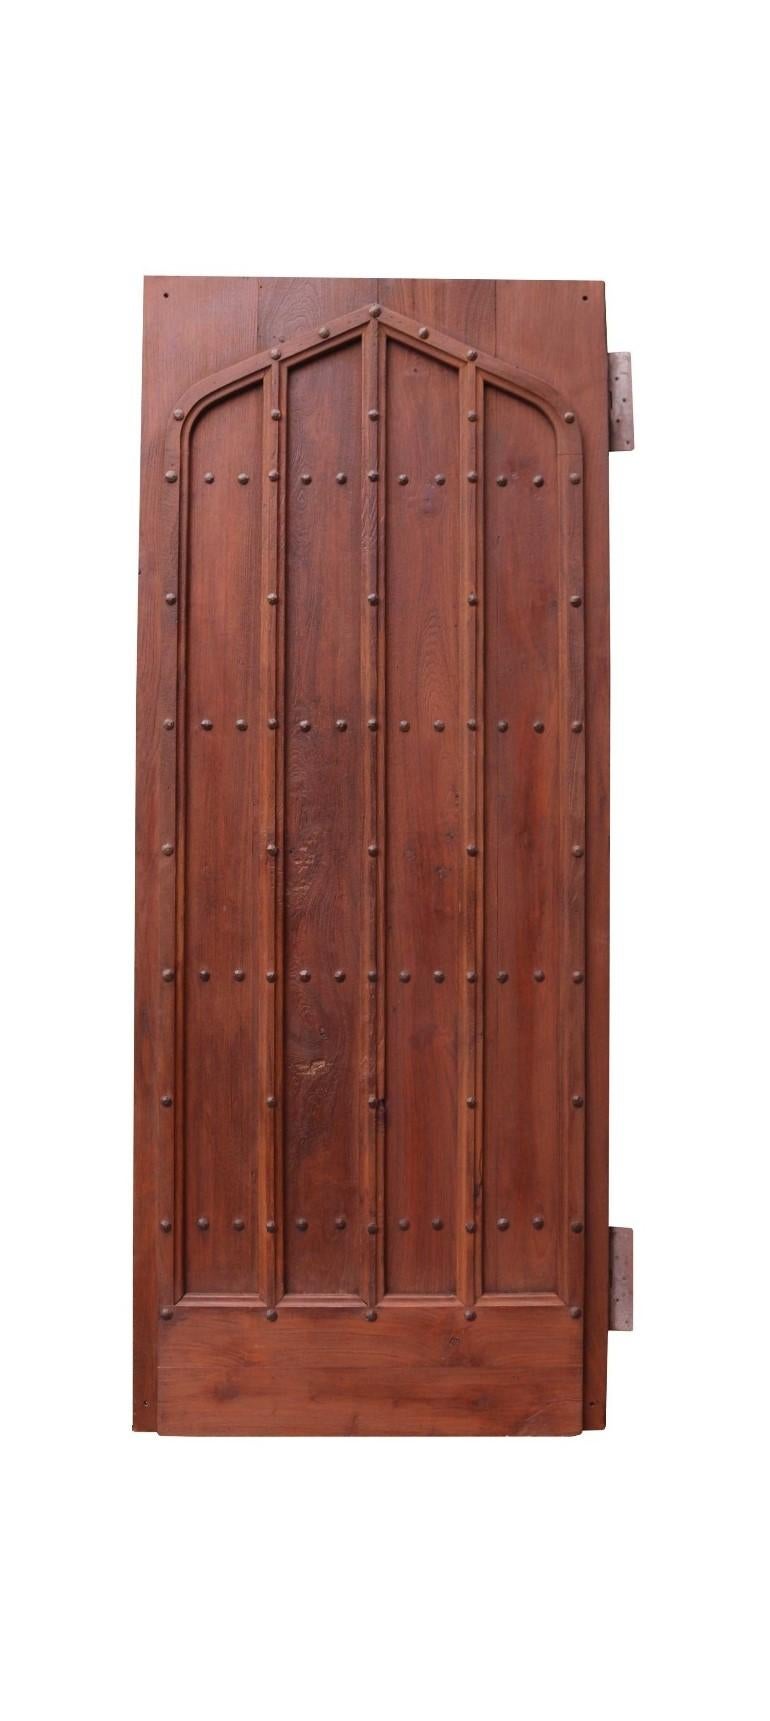 Porte en planches de style d'époque de bonne qualité avec des moulures décoratives appliquées à l'avant.